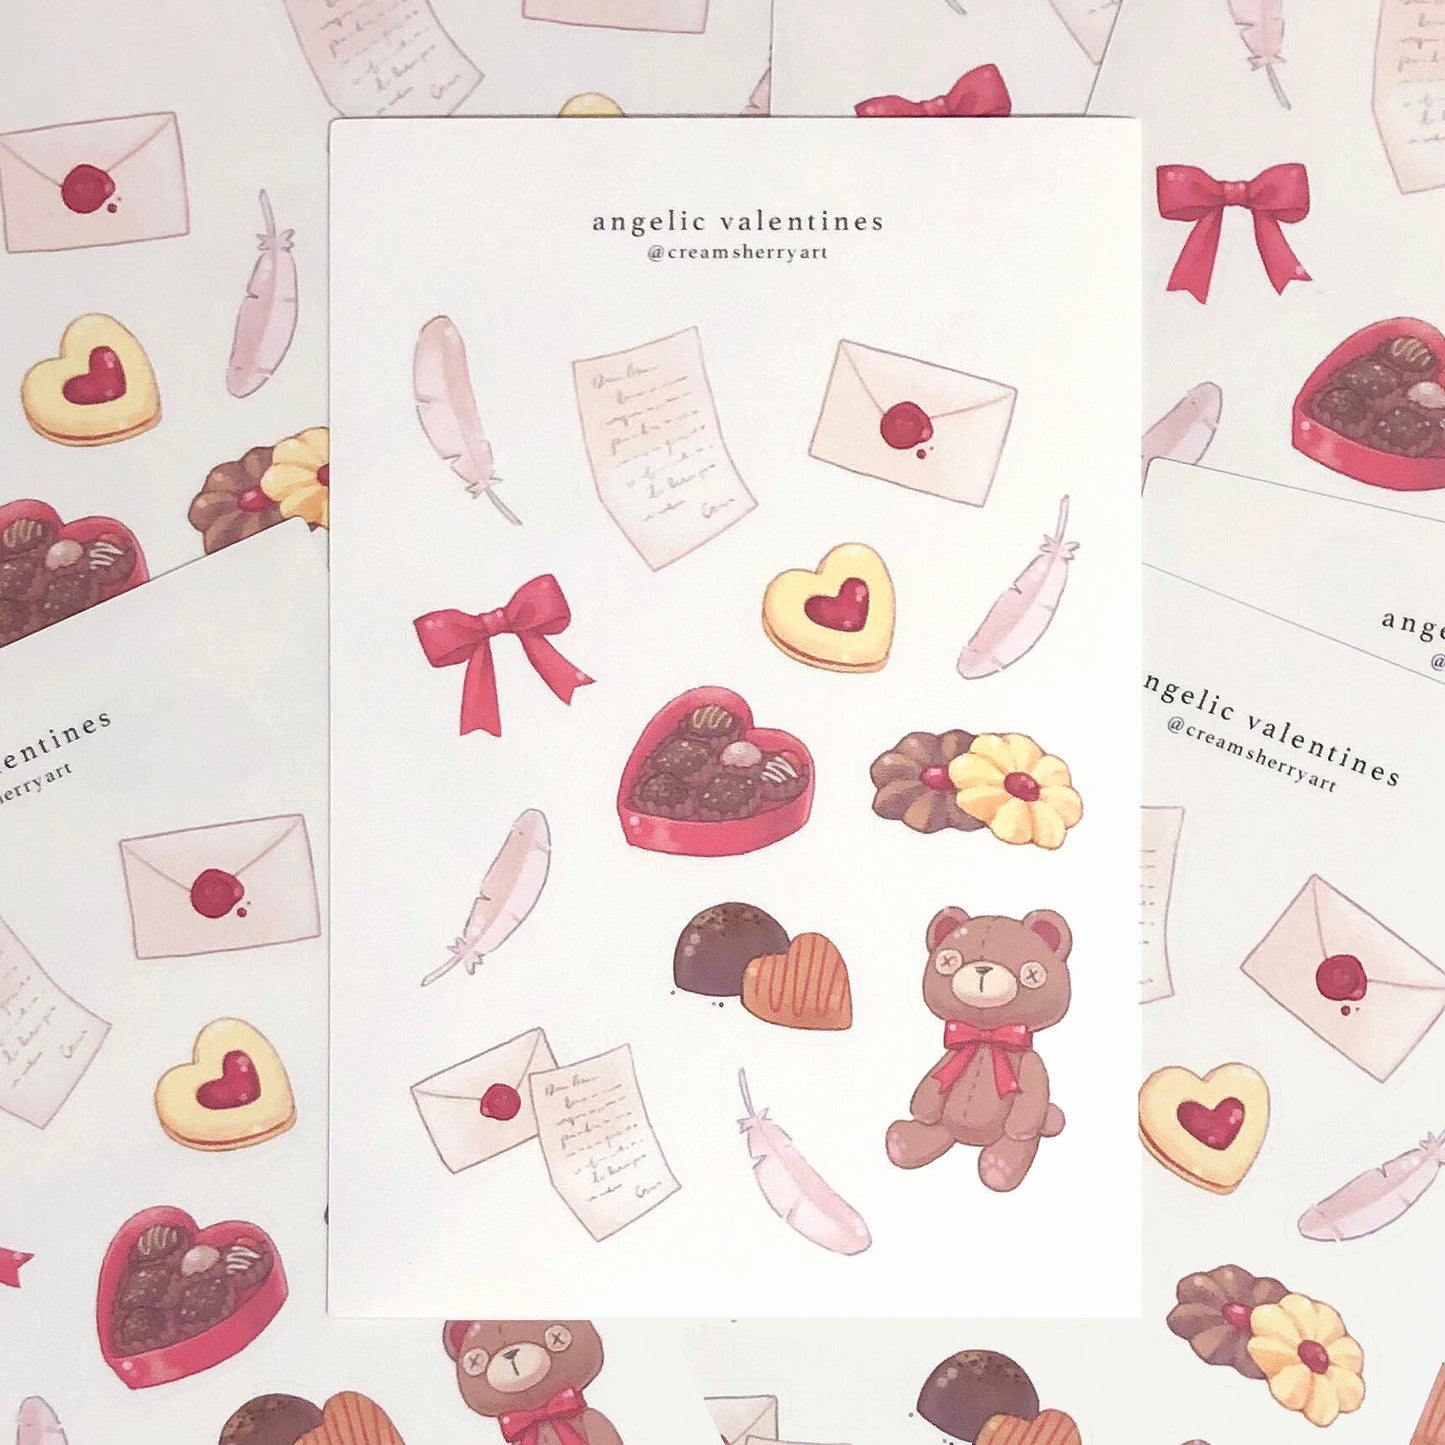 angelic valentines sticker sheet